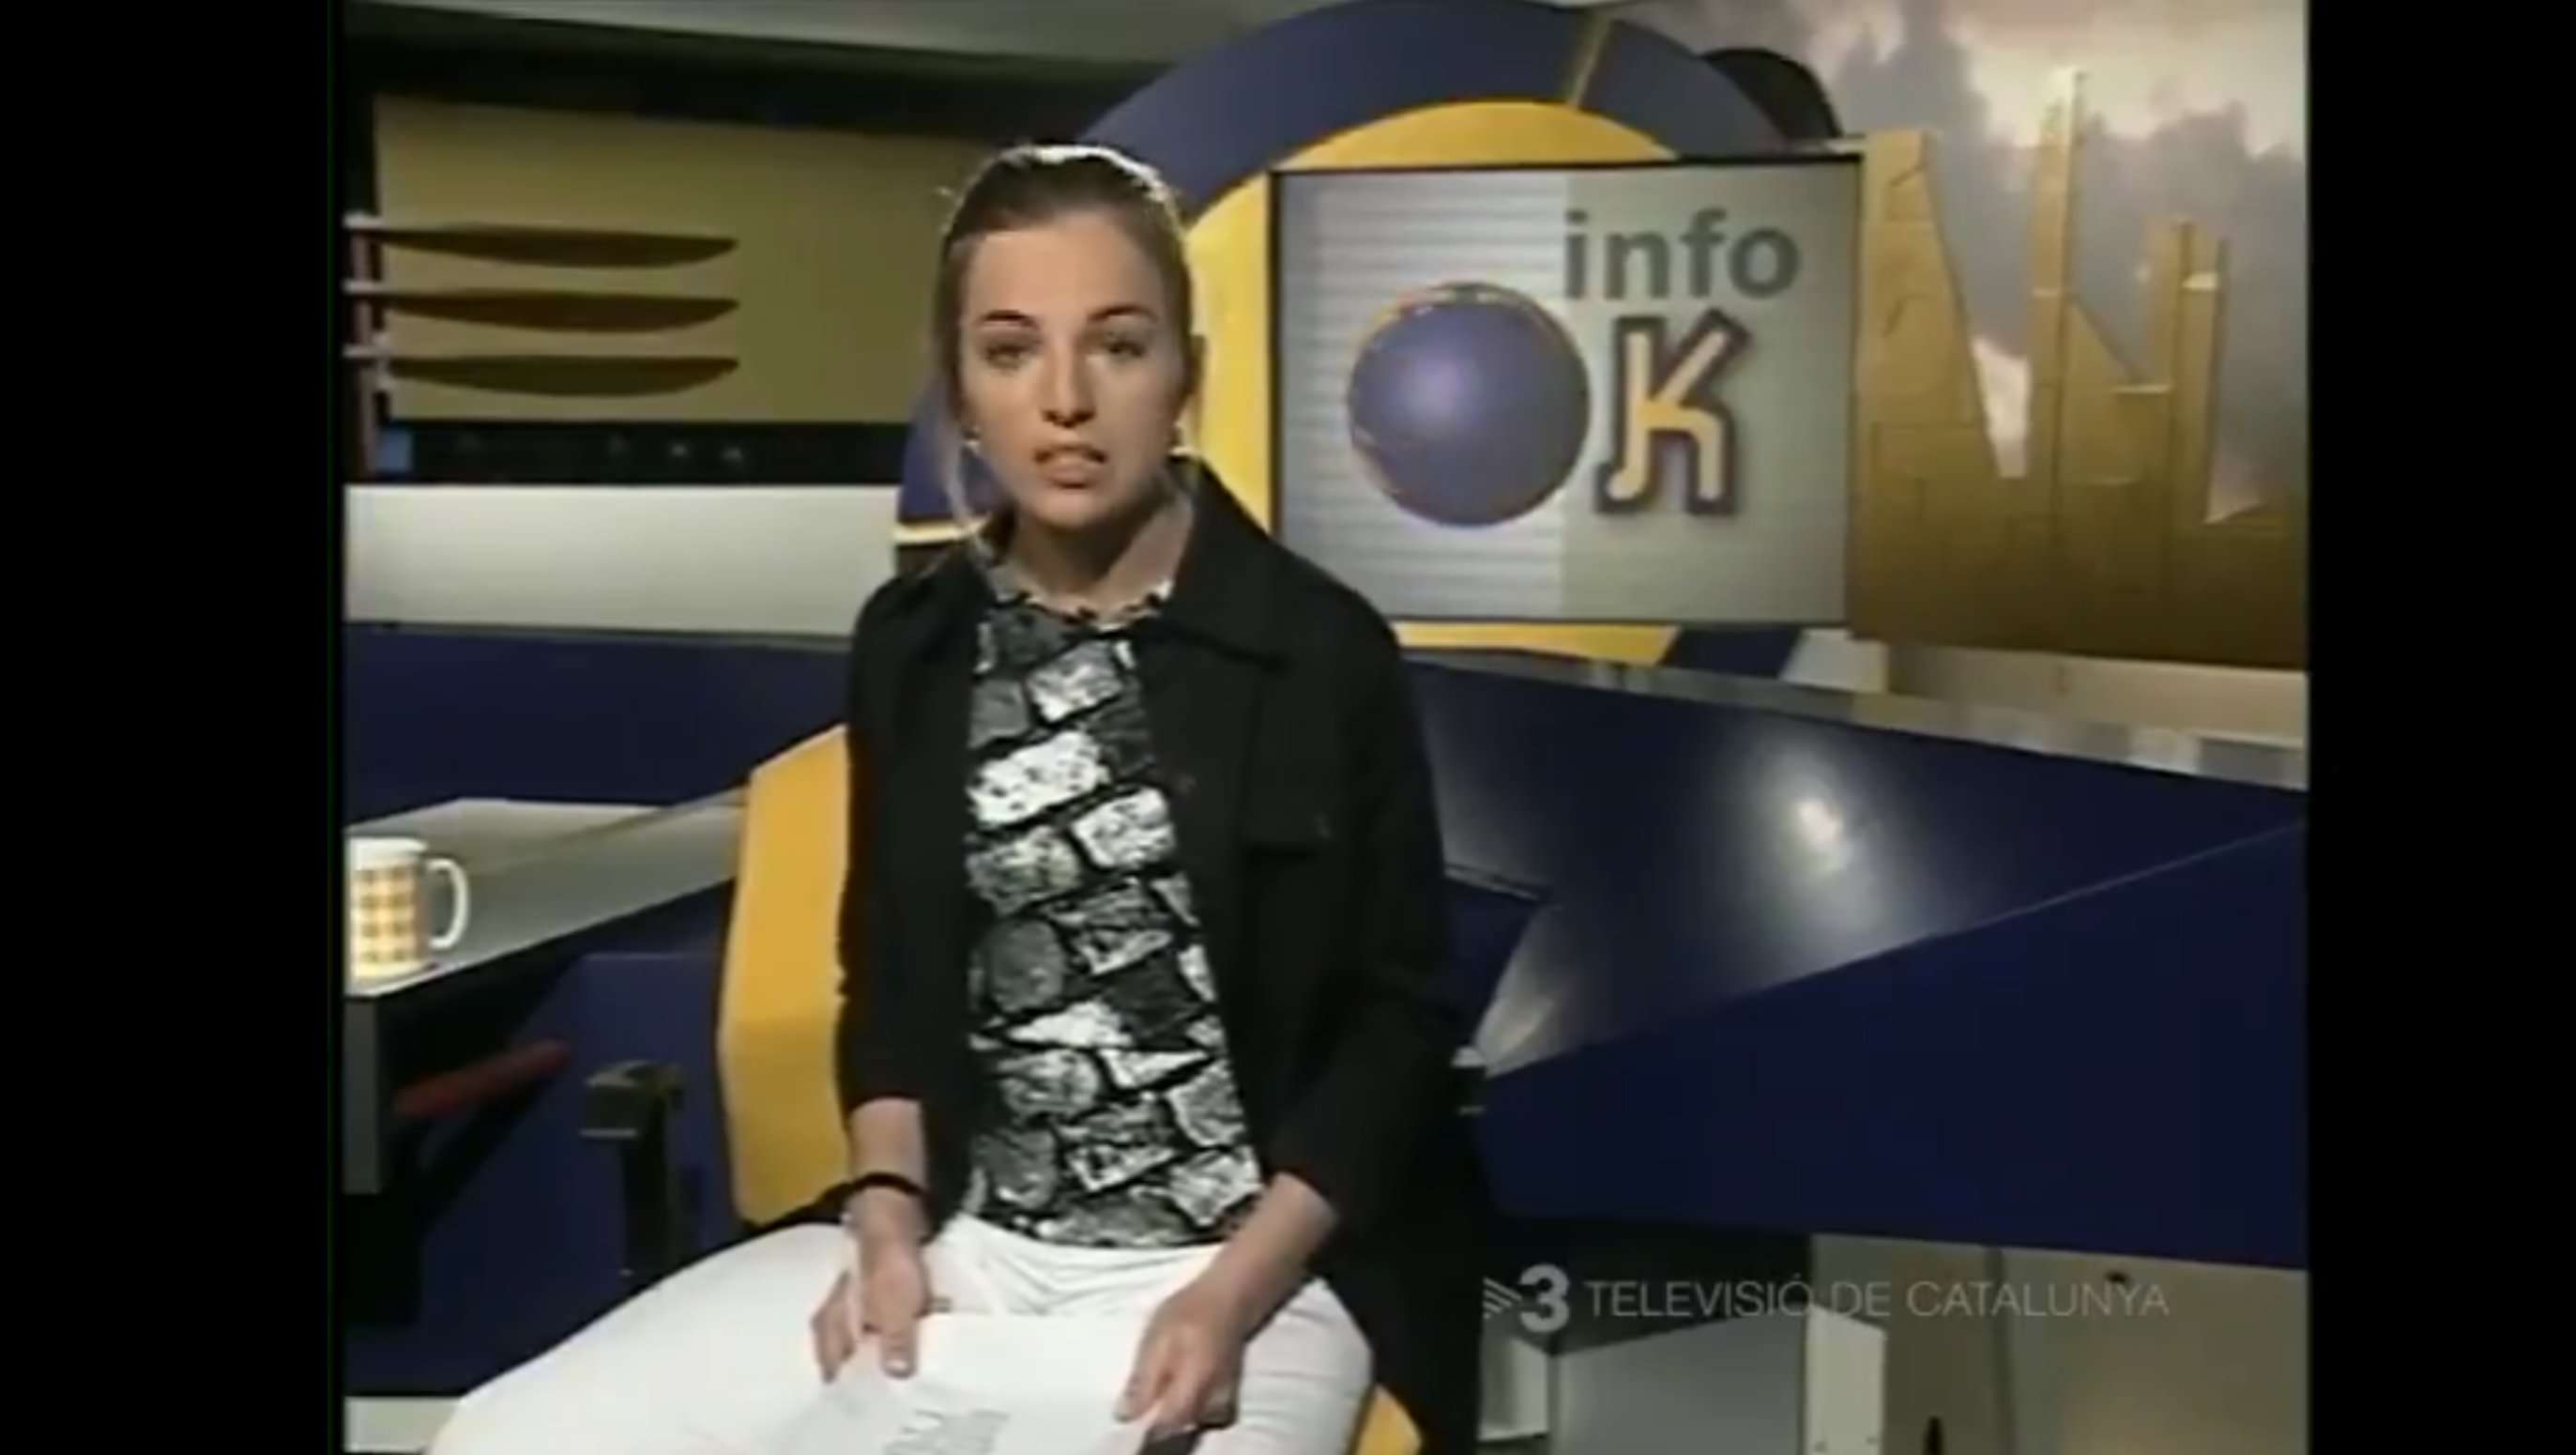 La jovencísima presentadora de TV3 que comenzó el InfoK hace 18 años